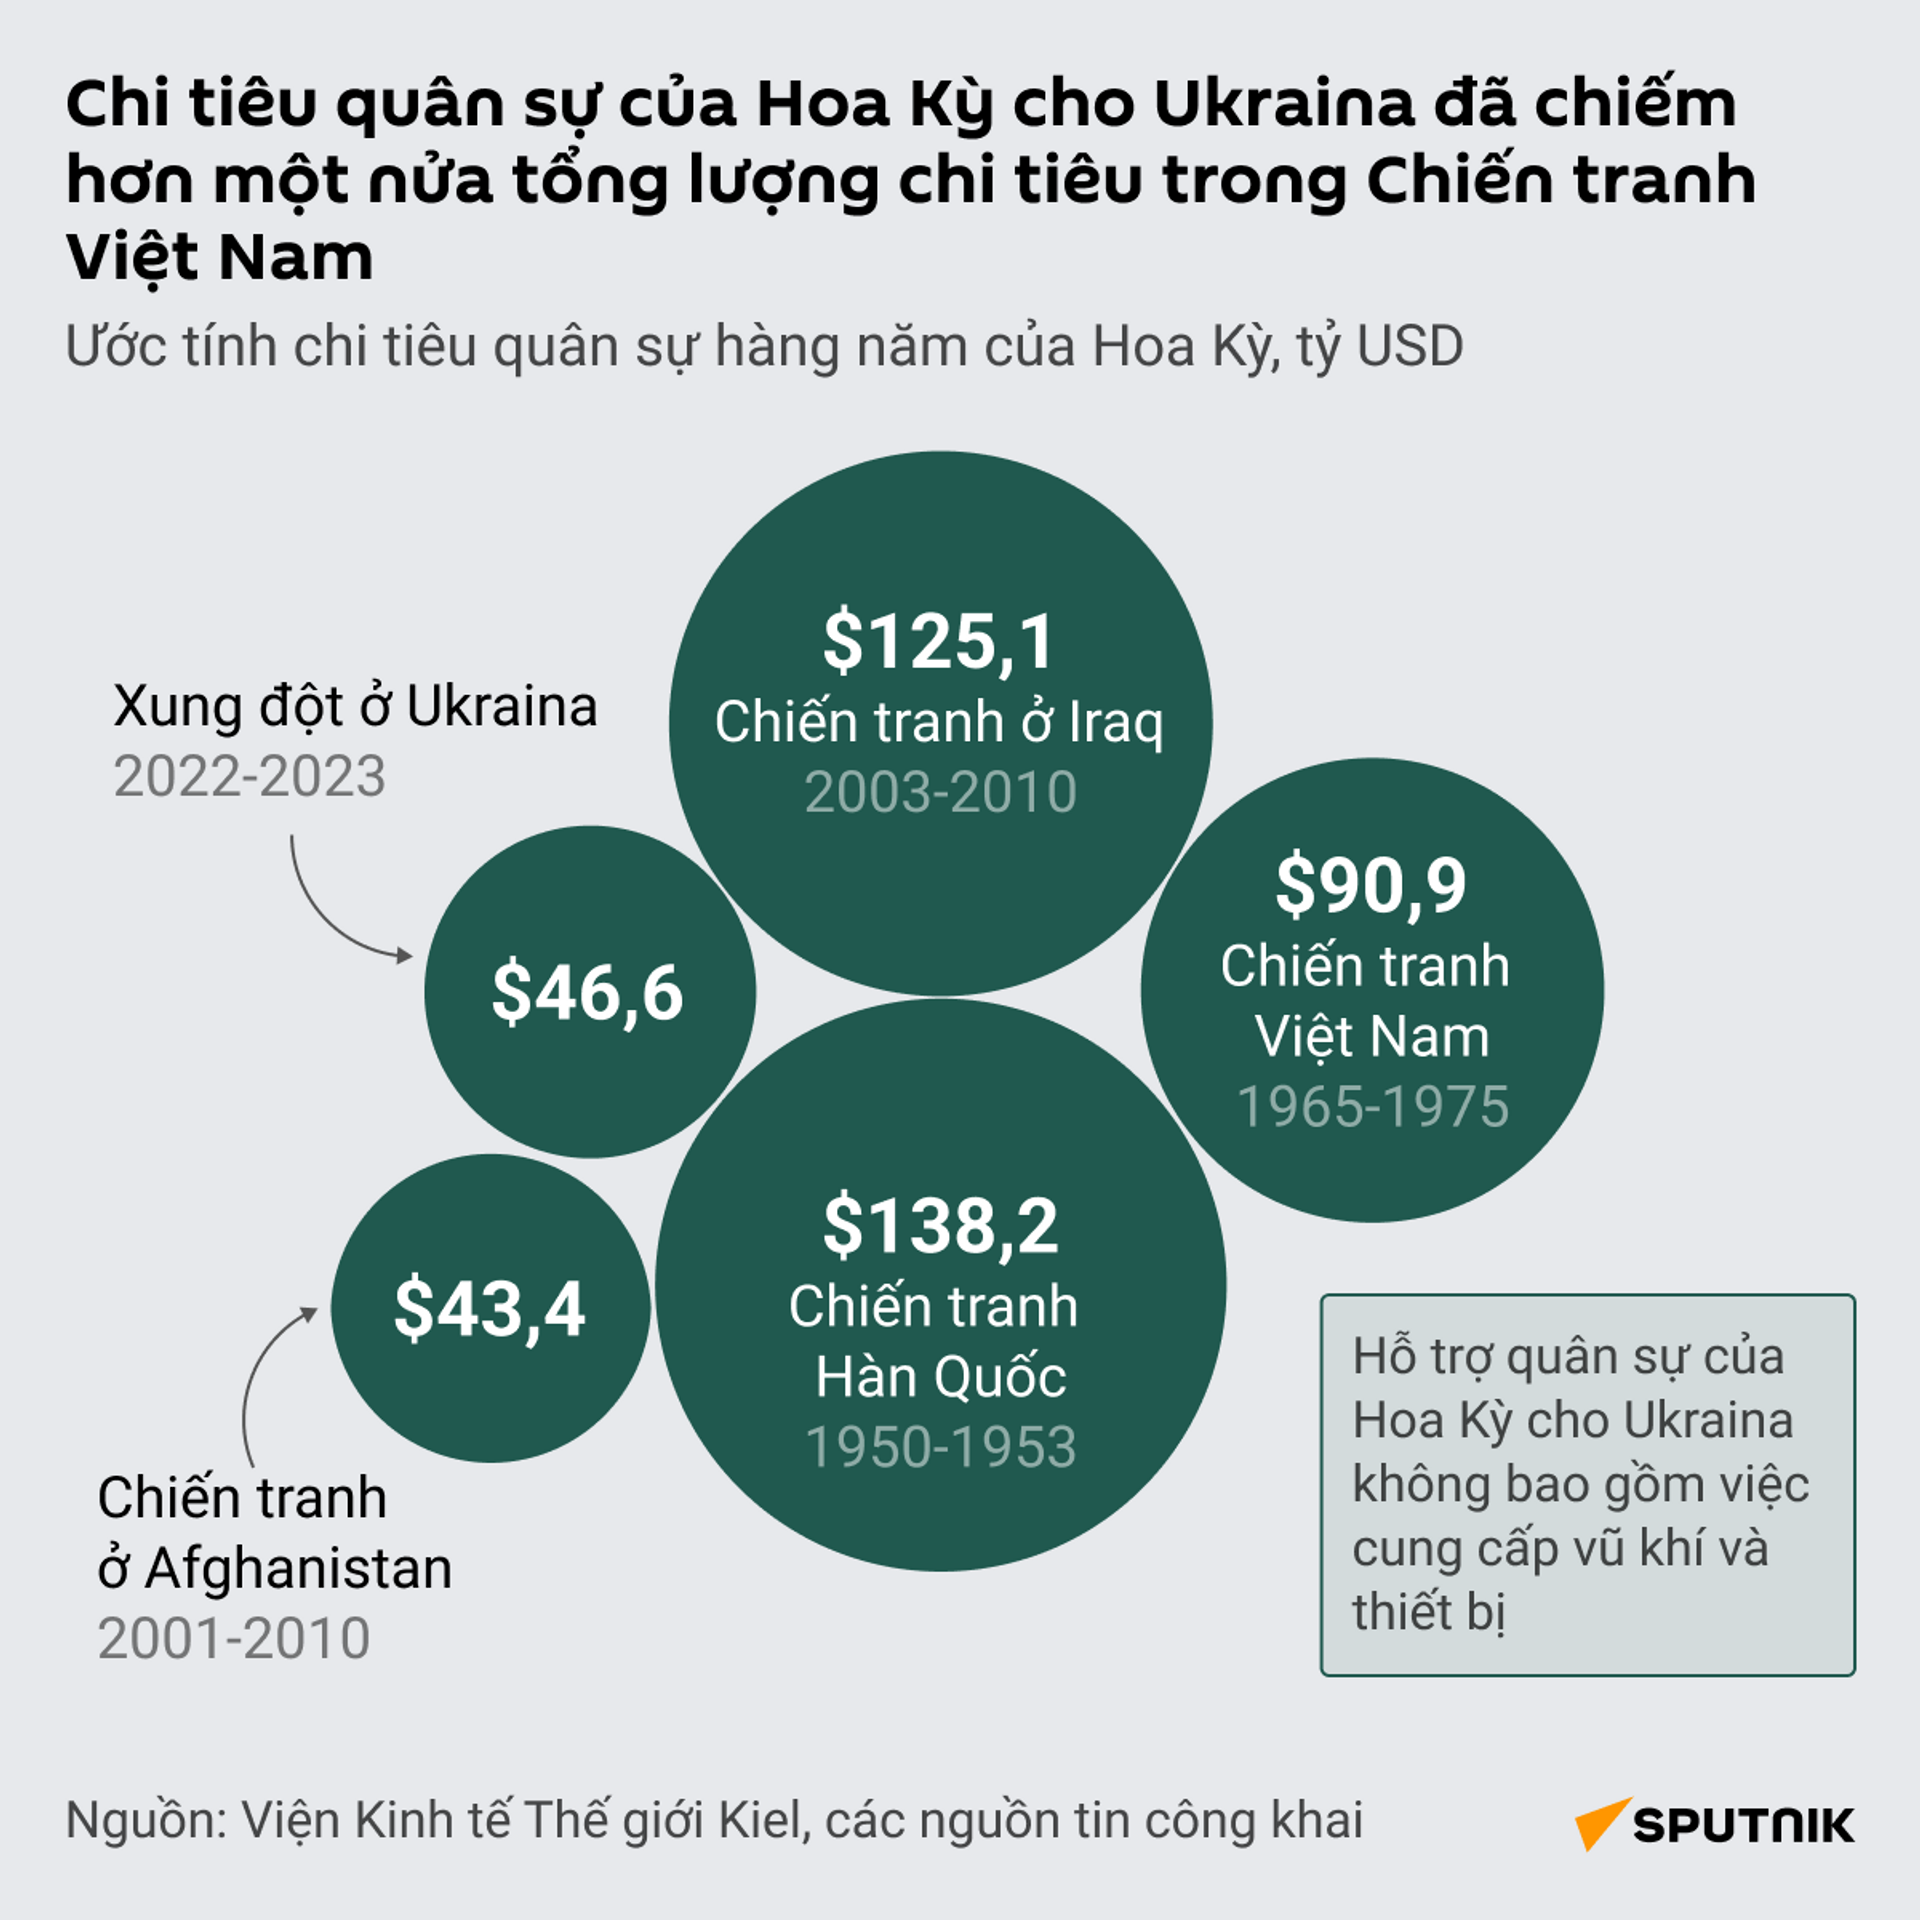 Chi tiêu quân sự của Hoa Kỳ cho Ukraina đã là hơn một nửa tổng tốn phí cho Chiến tranh Việt Nam - Sputnik Việt Nam, 1920, 29.03.2023